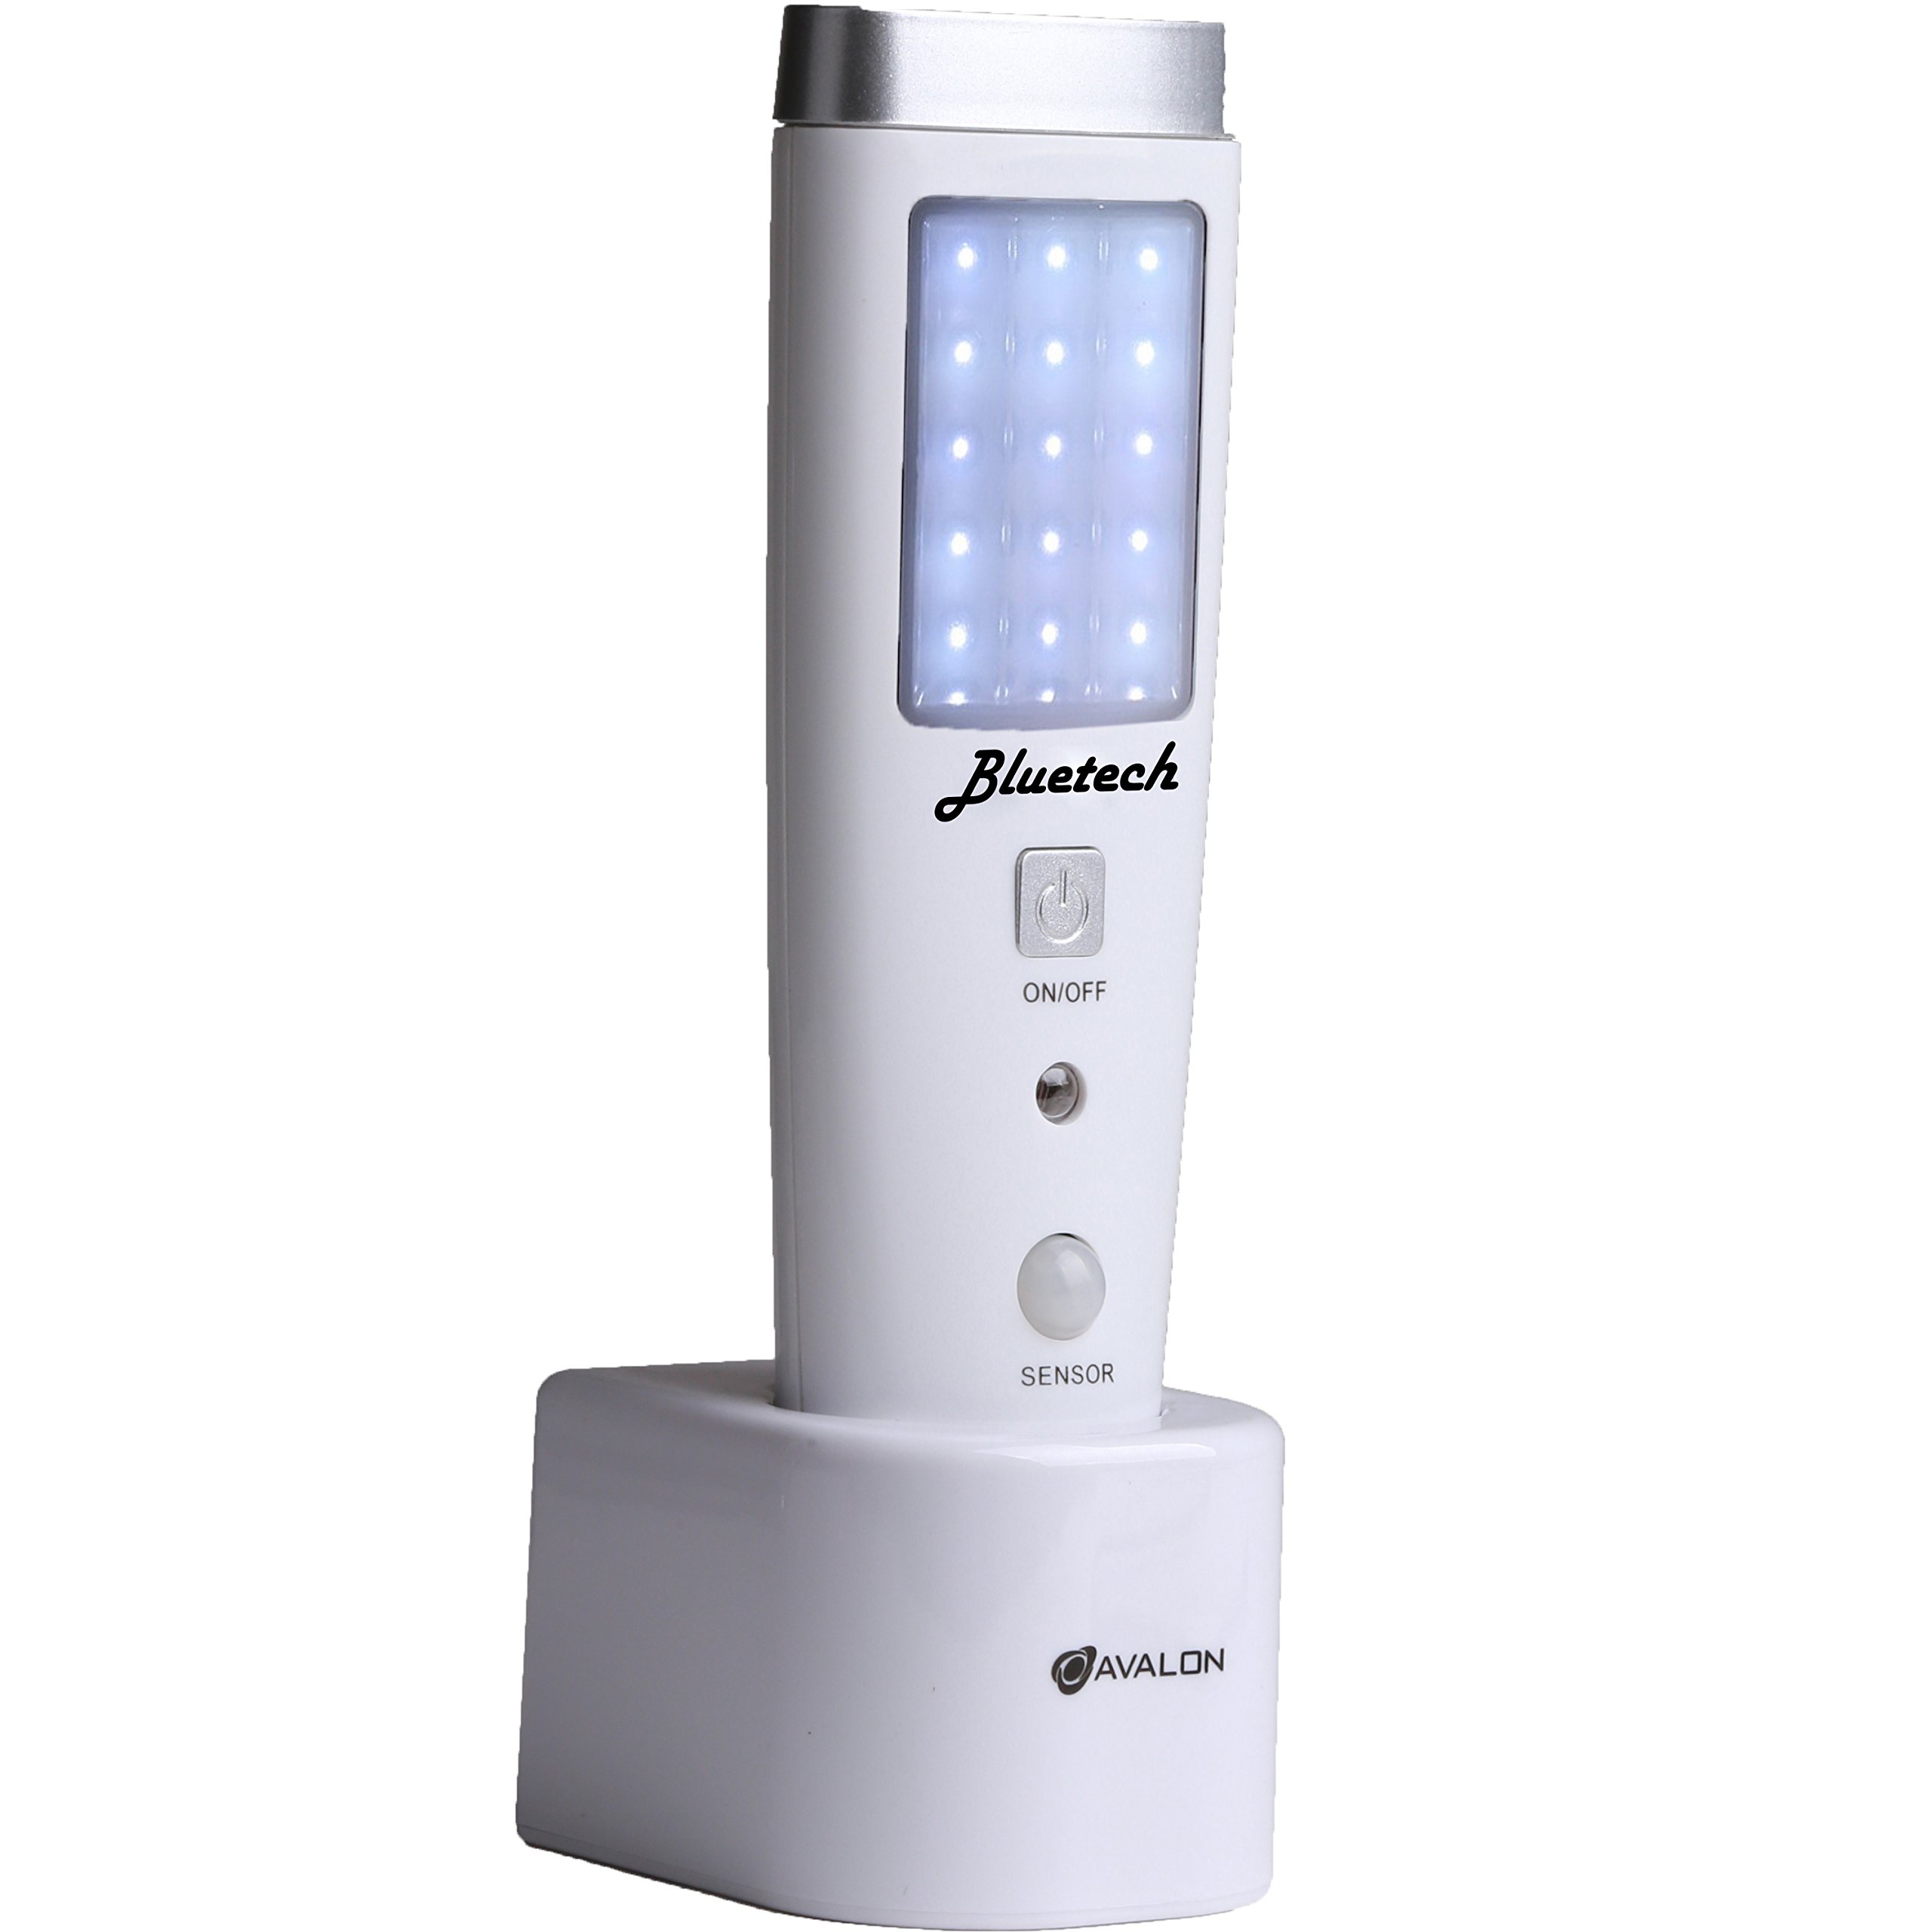 BLUETECH Avalon LED Flashlight Night Light for Emergency Preparedness, Portable Unit with Motion Detection,Power Failure Light, ETL Approved Blackout Light- 3 Pack, White